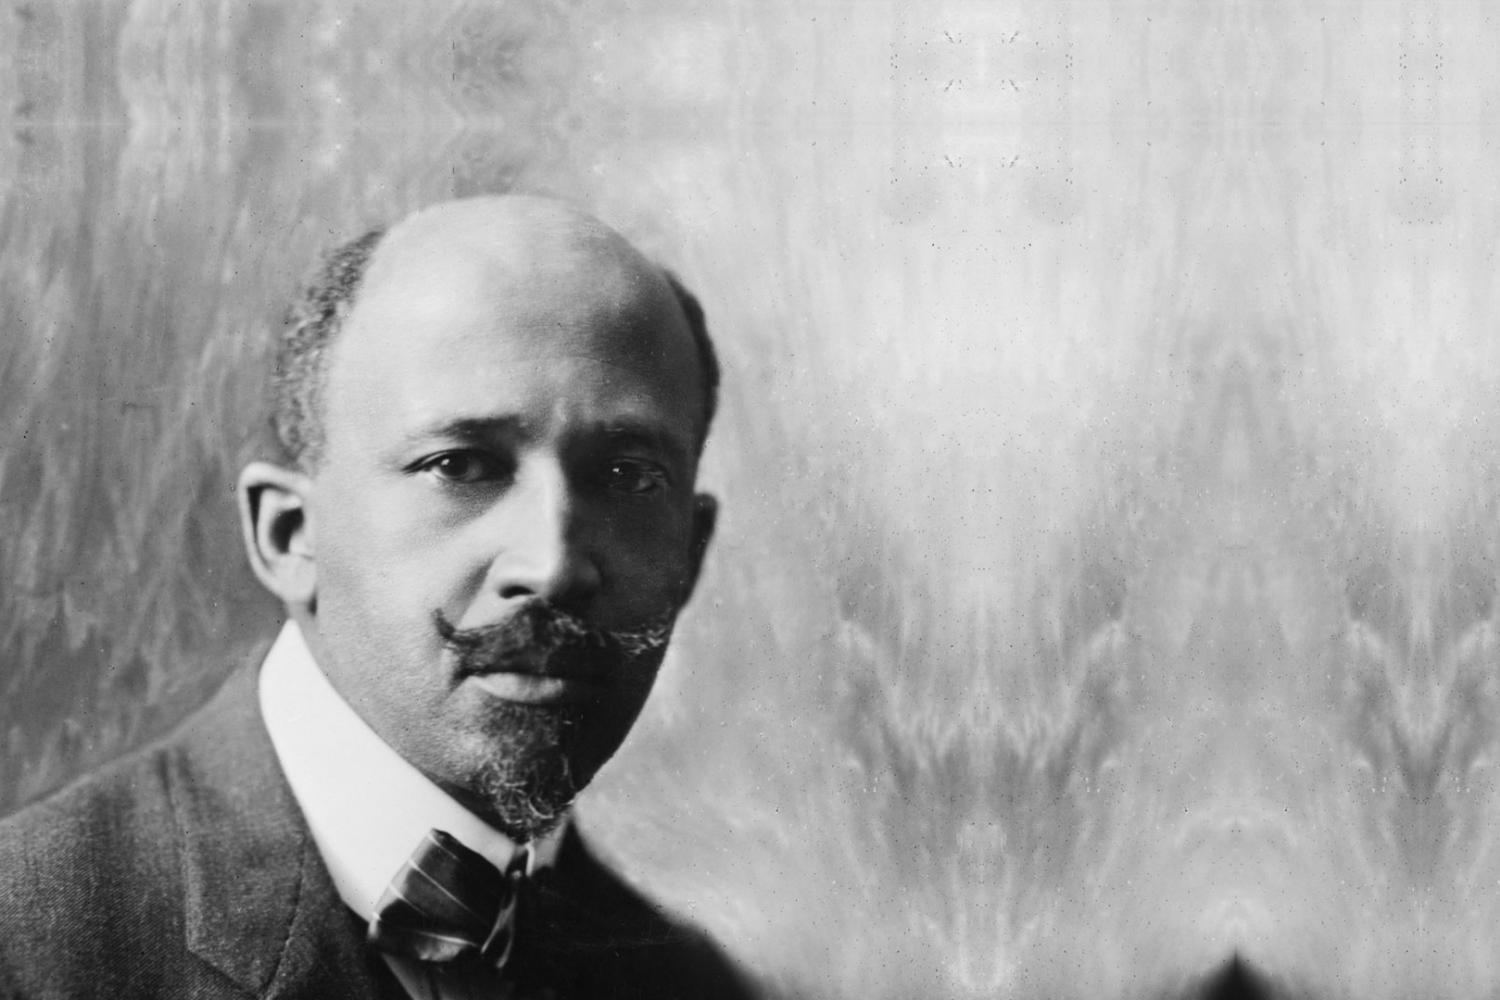 W.E.B. Du Bois 